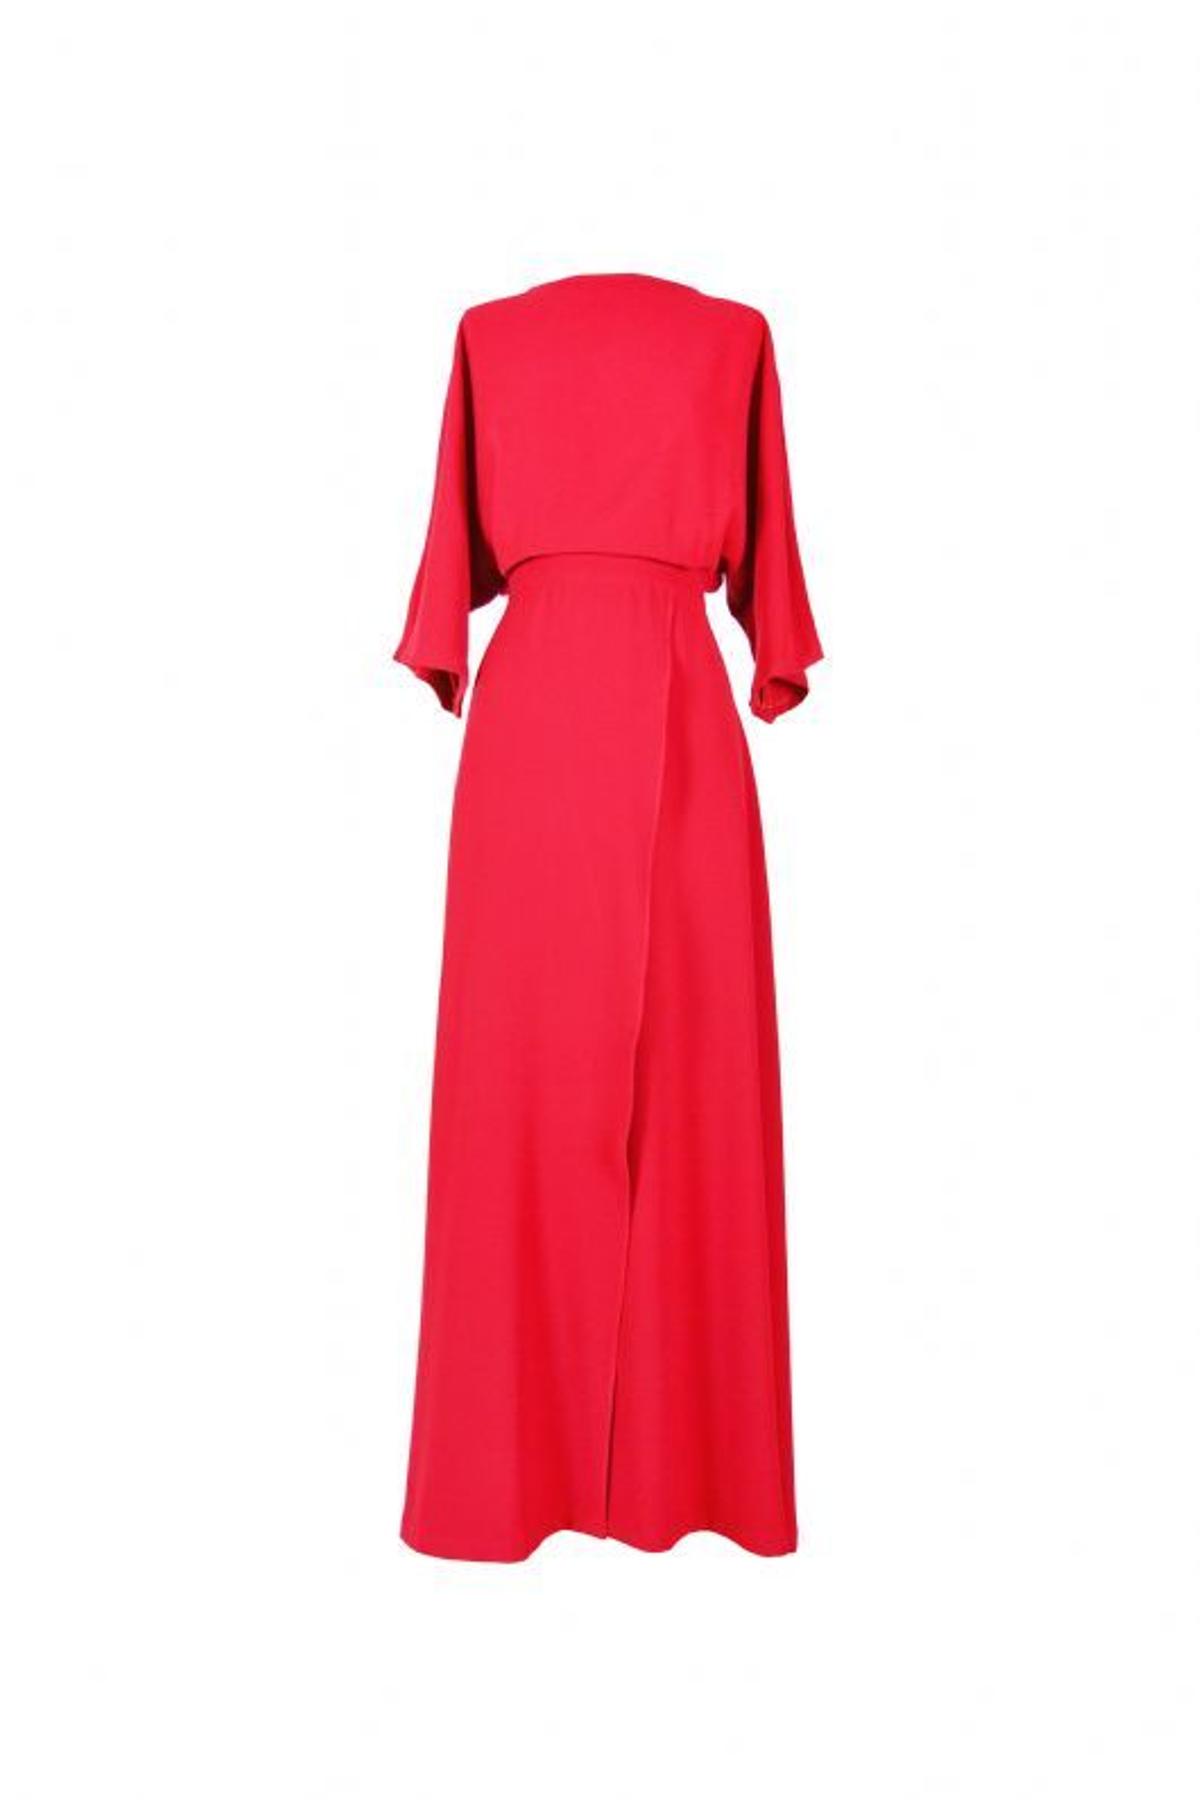 Vestido ribeado en color rojo de Cossy (143,99€)